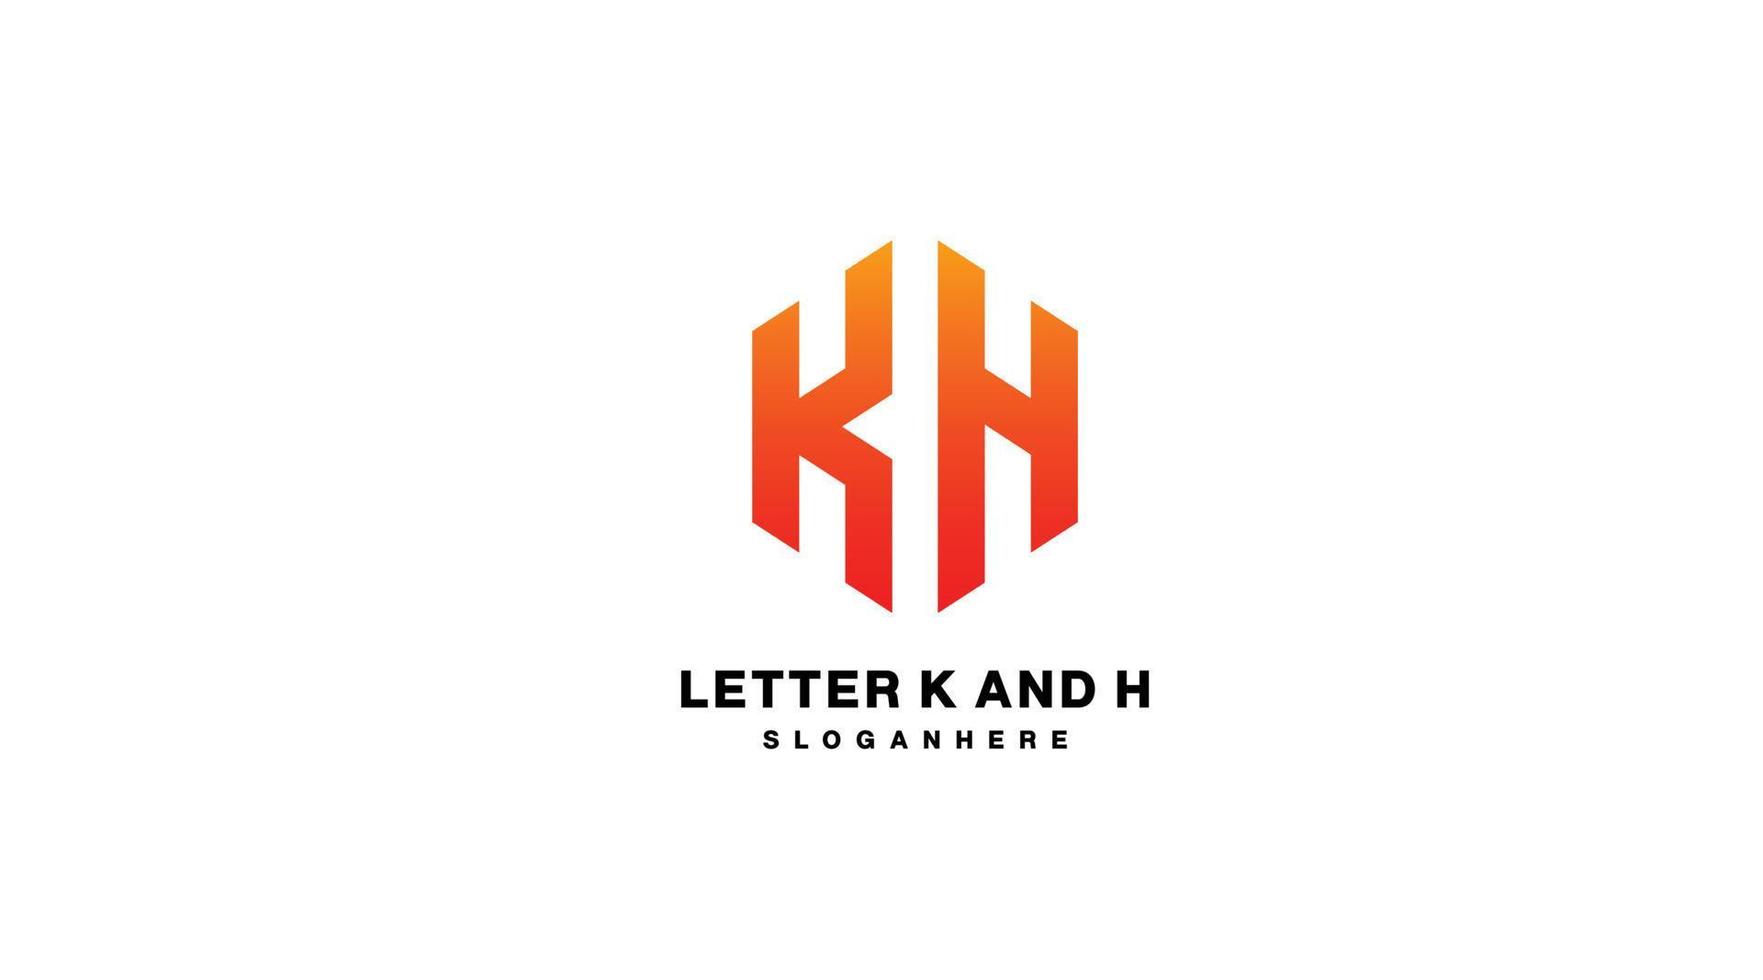 logo inicial k y h degradado colorido vector